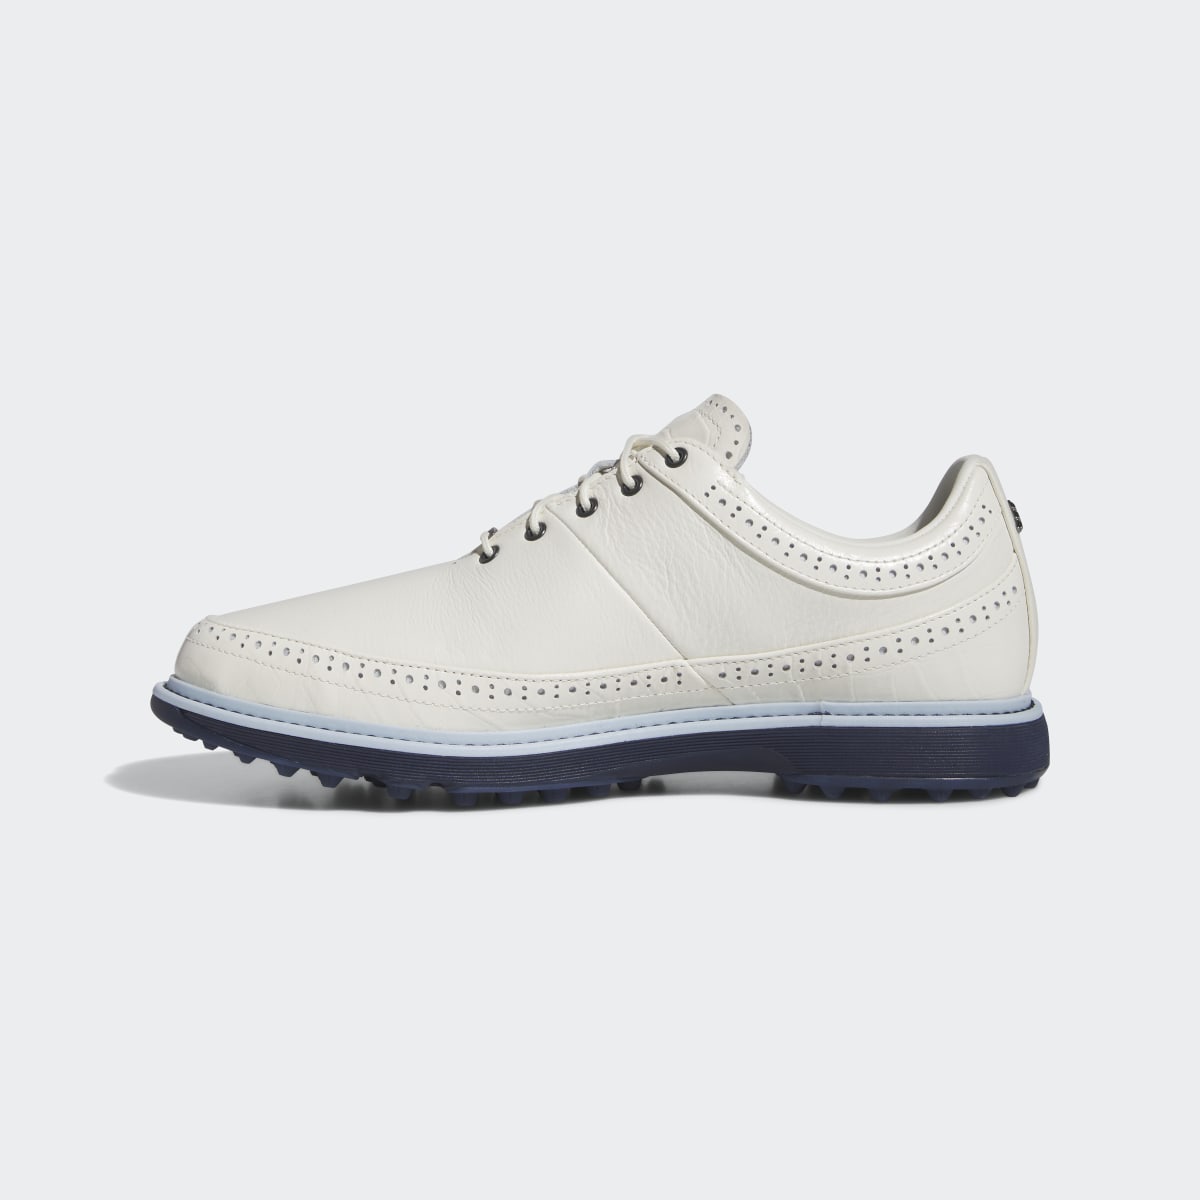 Adidas Modern Classic 80 Spikeless Golf Shoes. 12